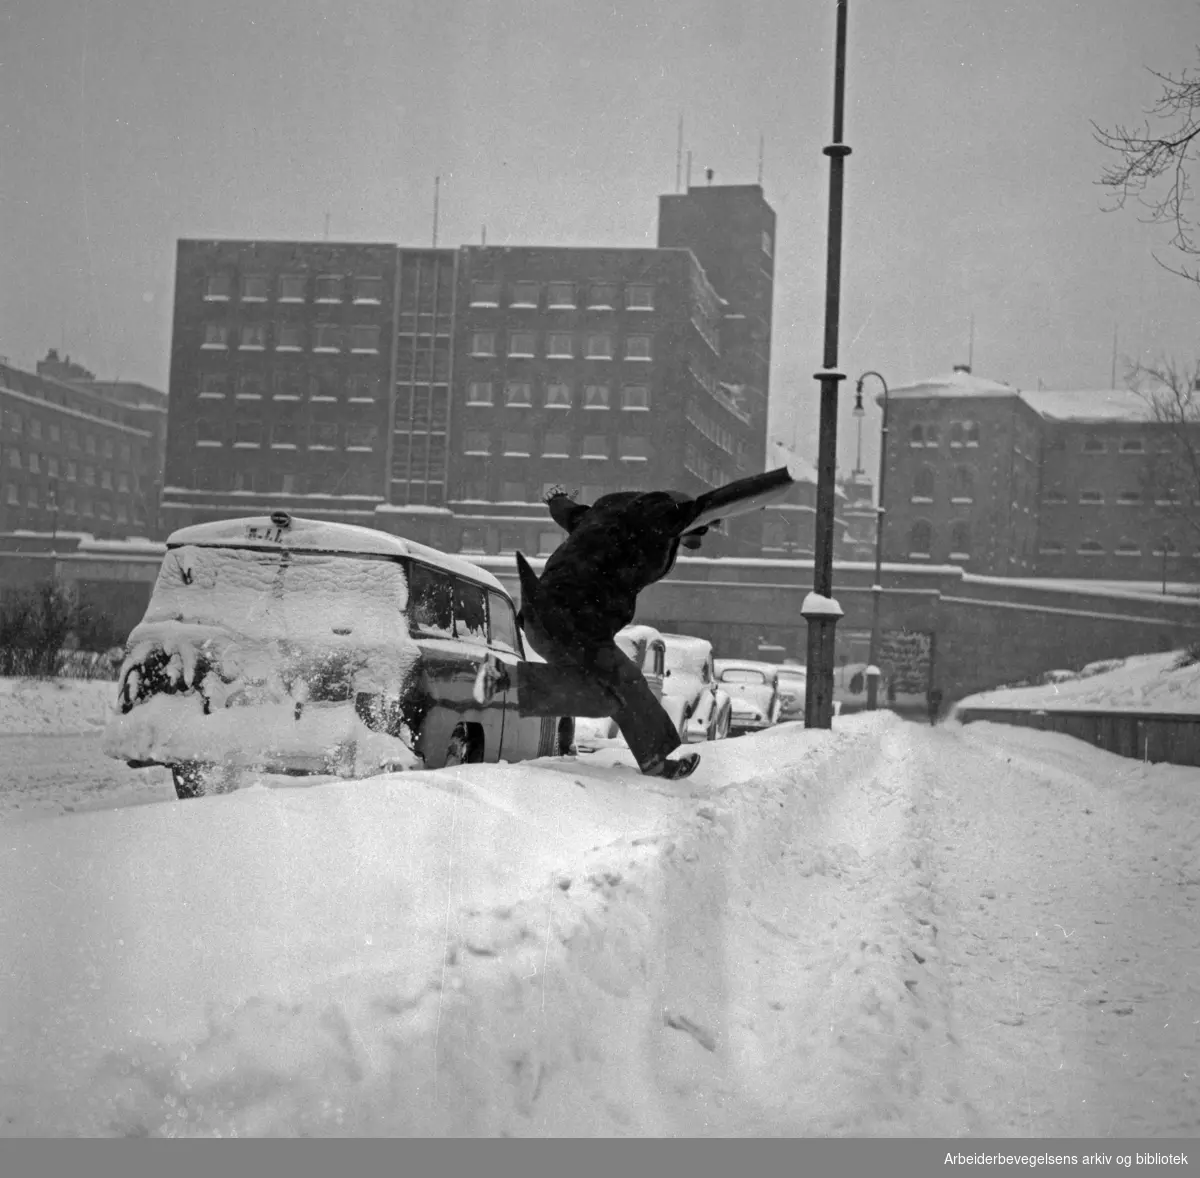 Mann hopper over snøfonn på Arne Garborgs plass. Mars 1954.